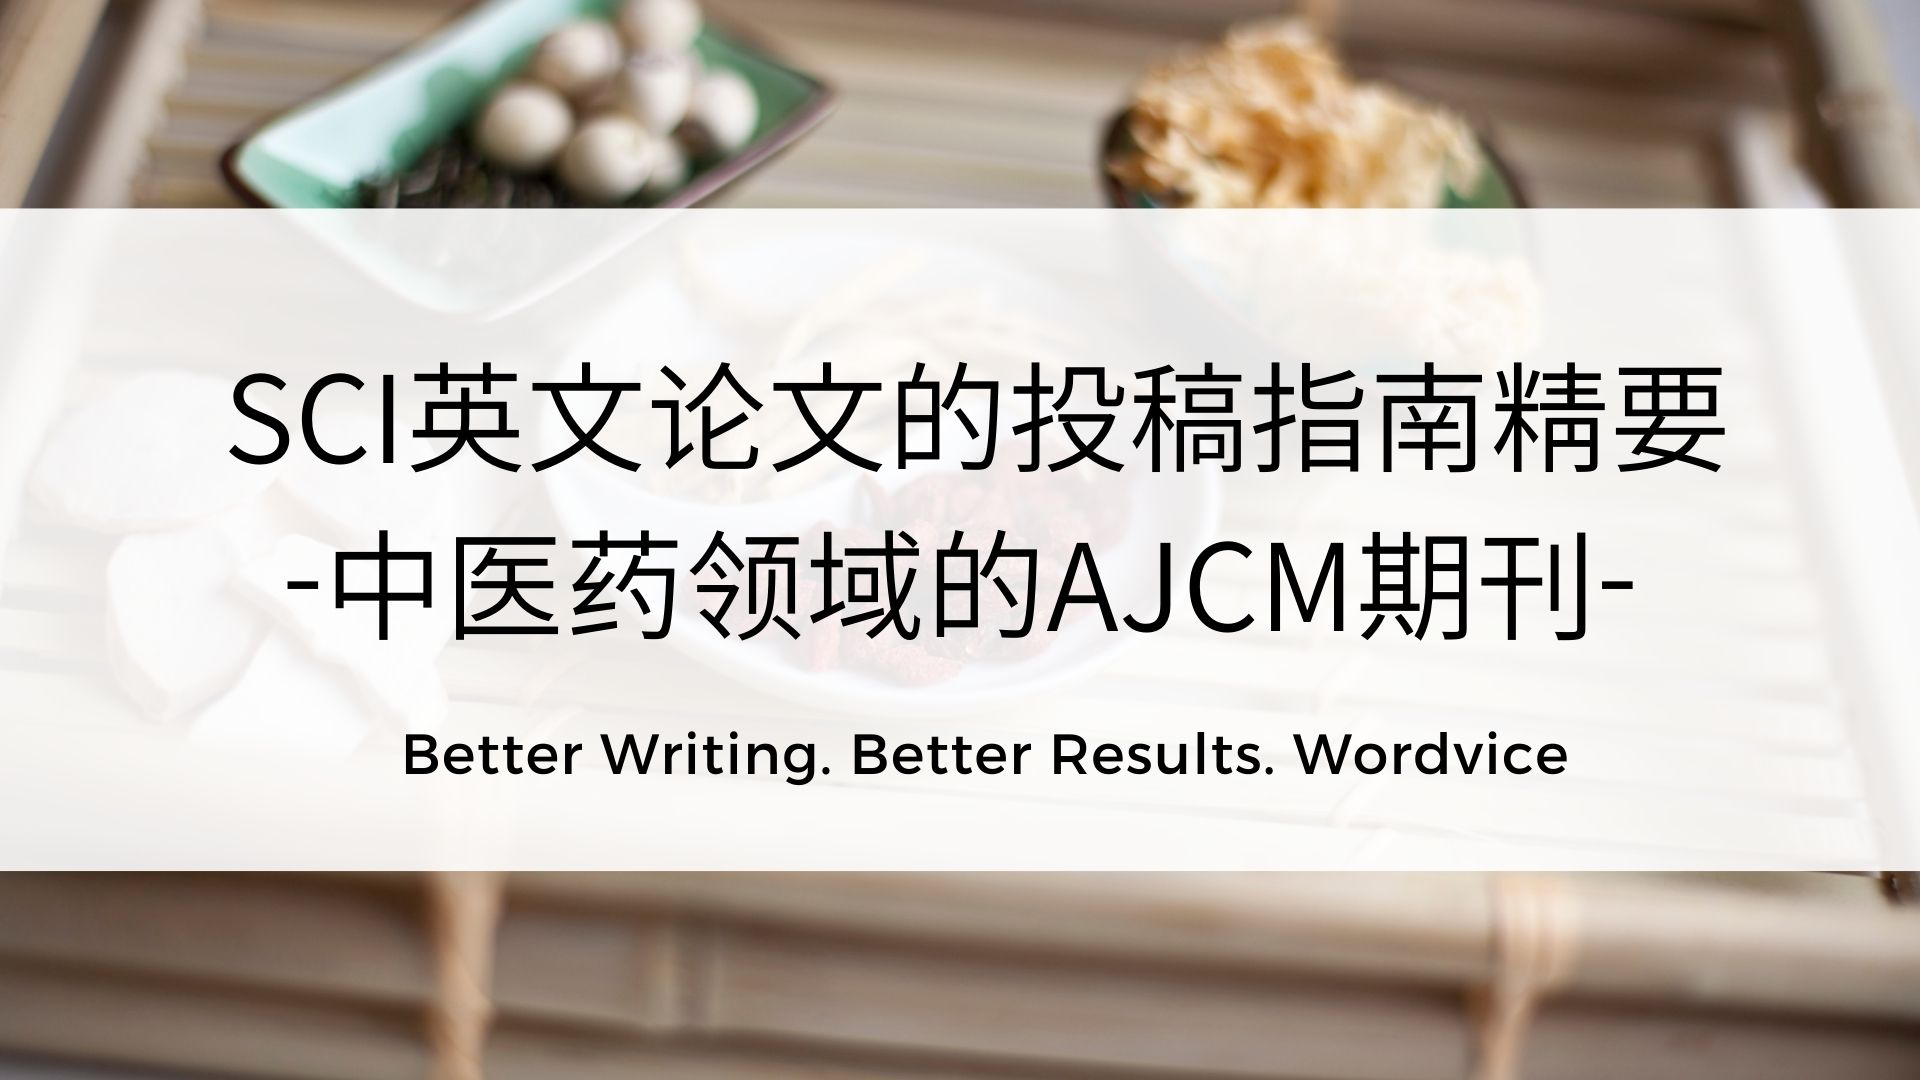 111_中医药领域的AJCM期刊.jpg